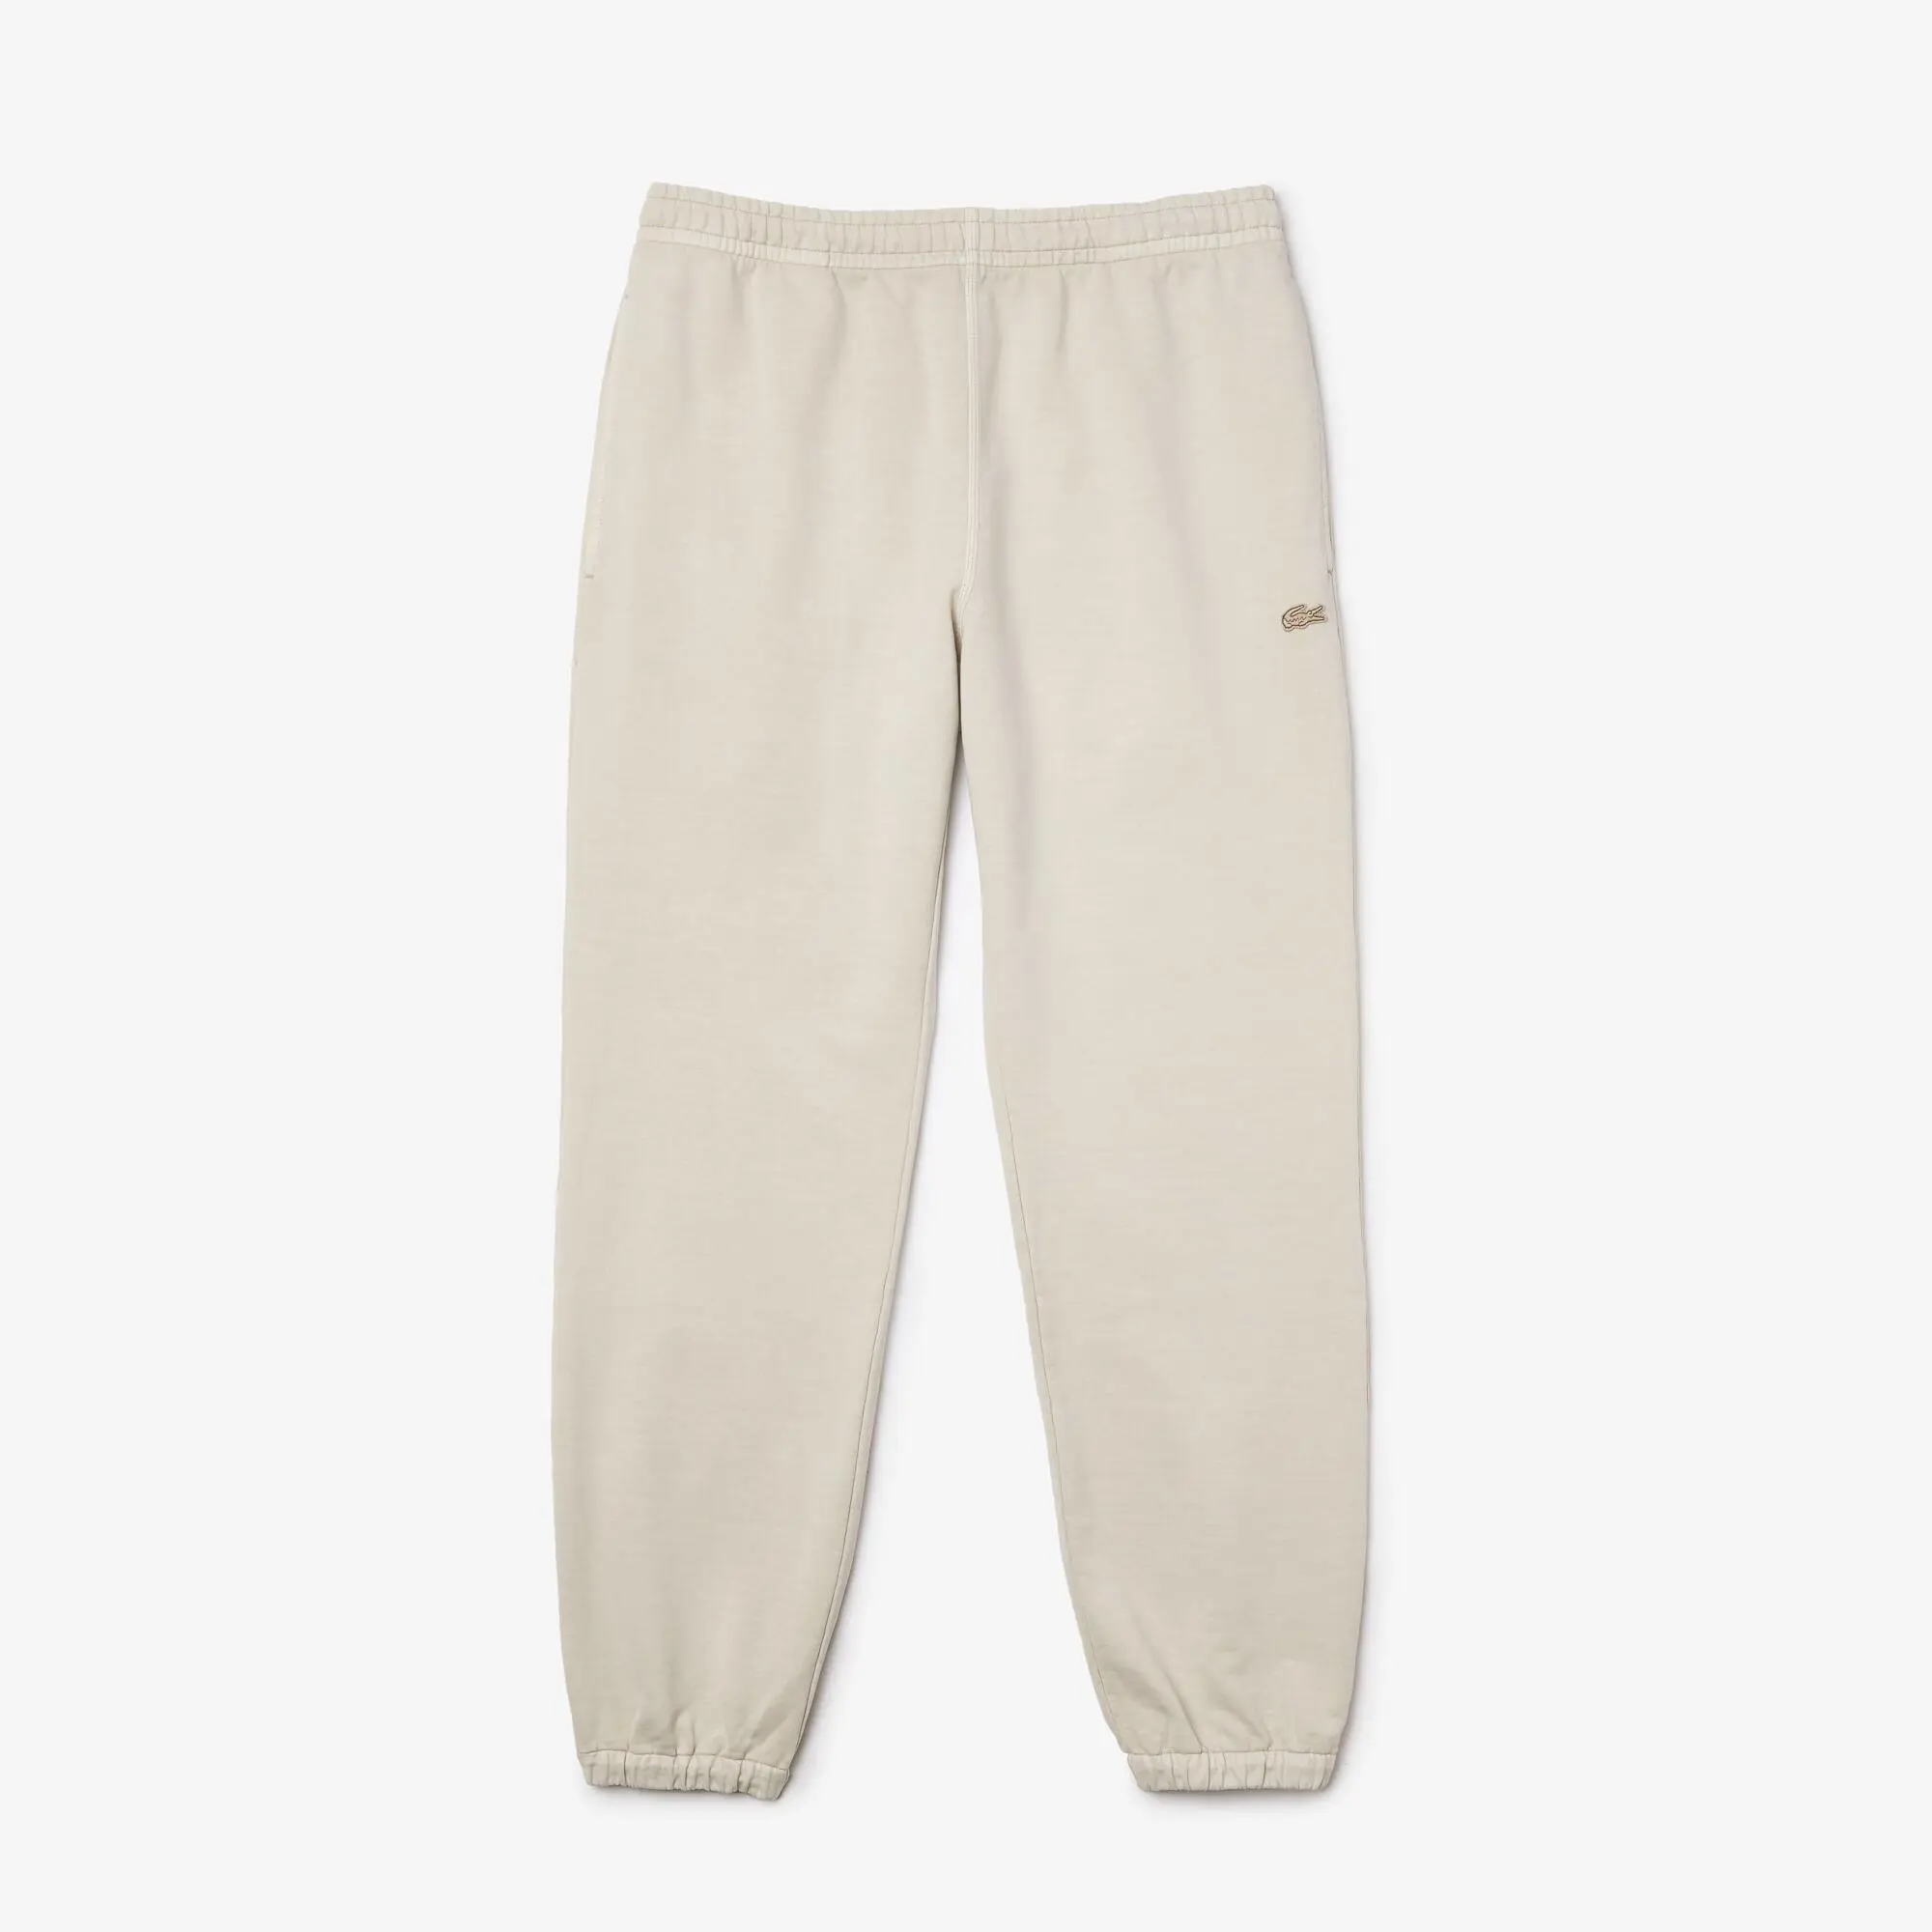 Lacoste Men’s Organic Cotton Sweatpants. 2